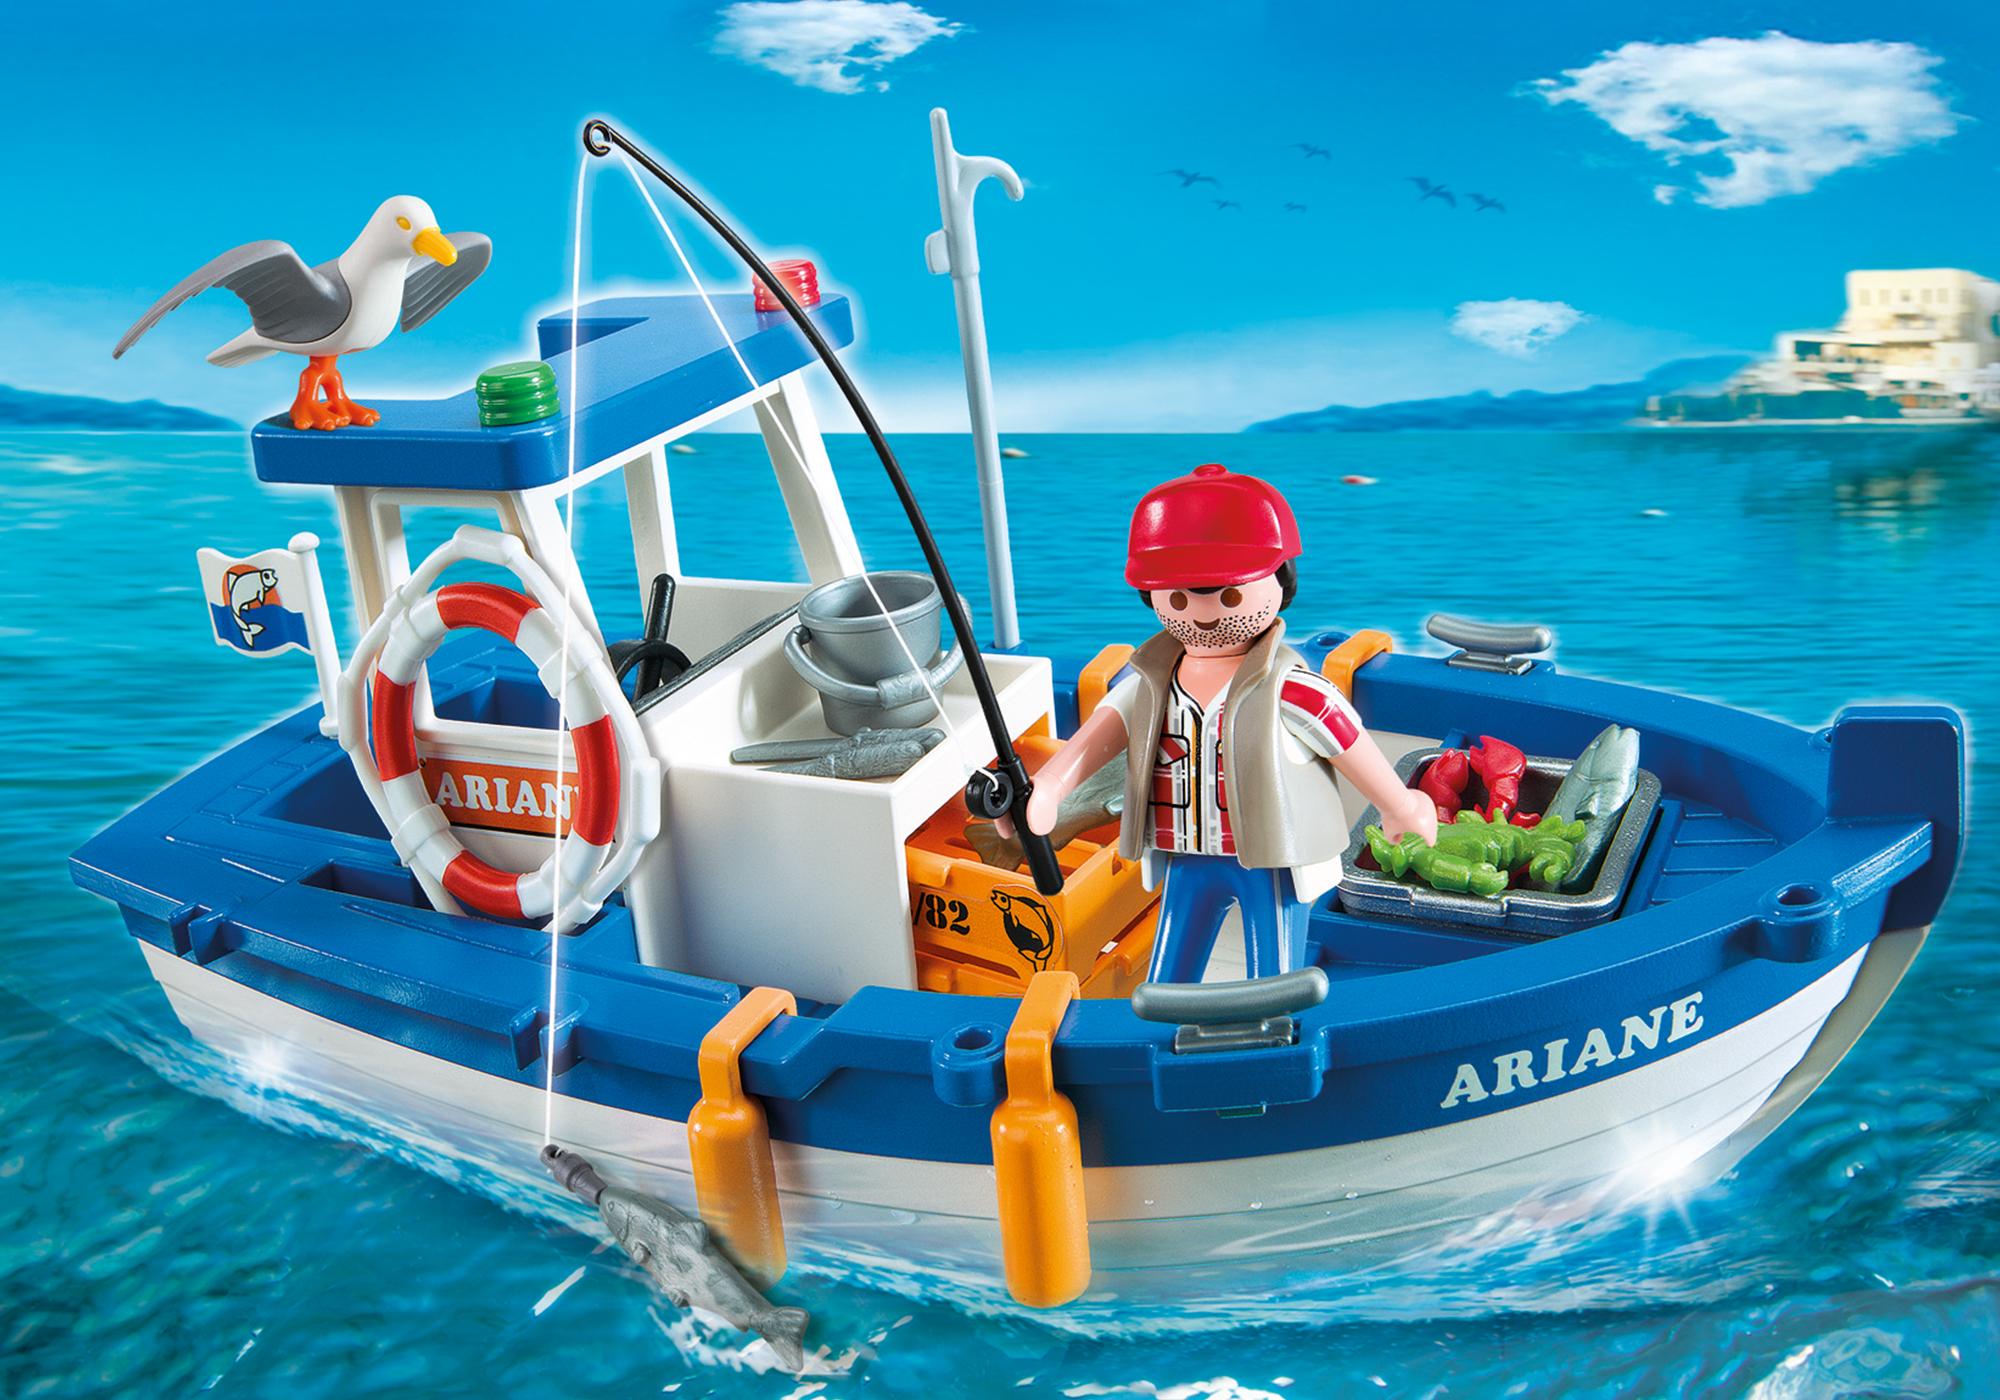 bateau de plaisance playmobil